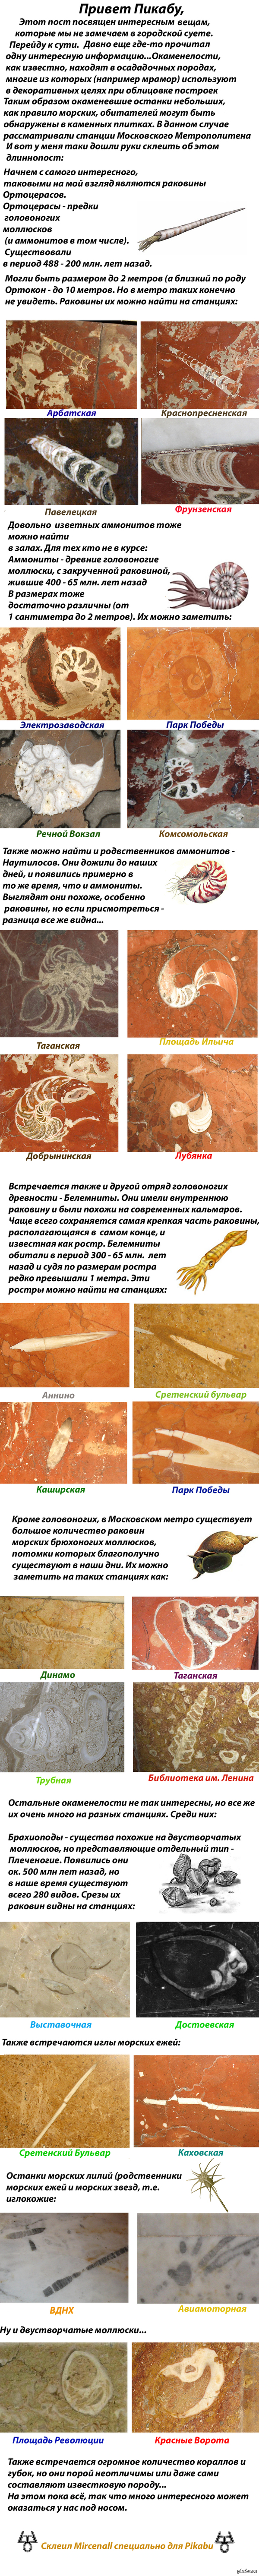       ,   : <a href="http://pikabu.ru/story/paleontologiya_moskovskogo_metro_1686334">http://pikabu.ru/story/_1686334</a>